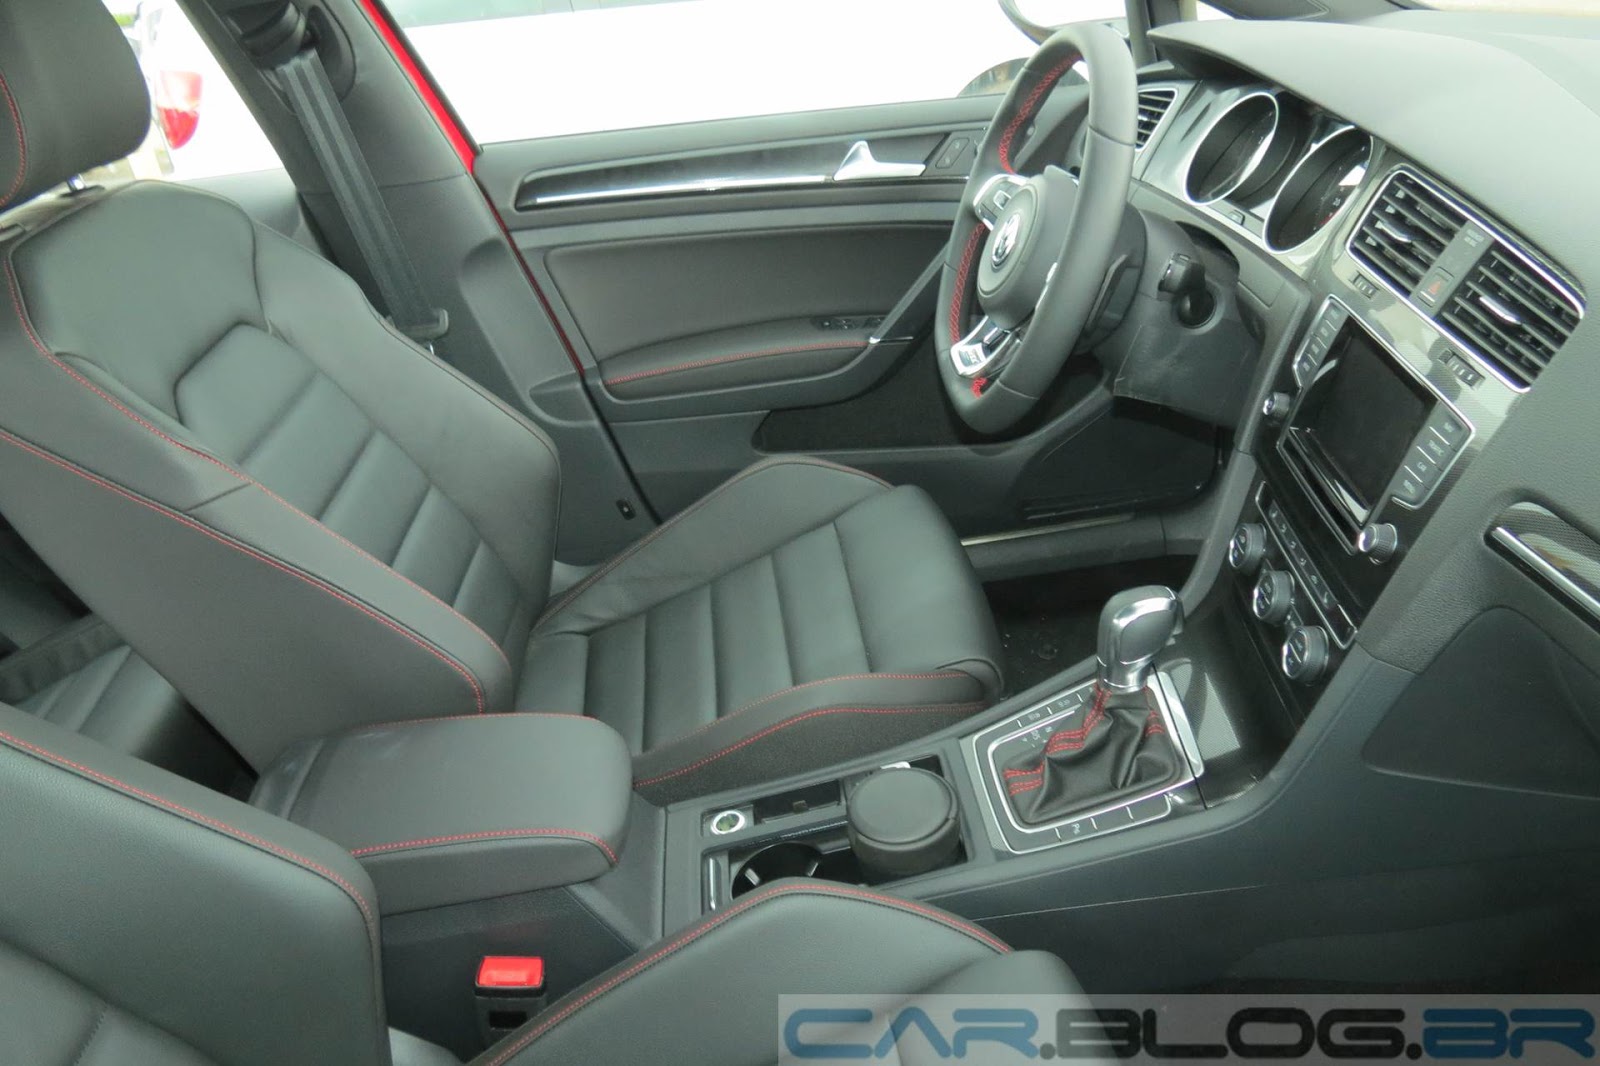 VW Golf GTI - interior com revestimento em couro